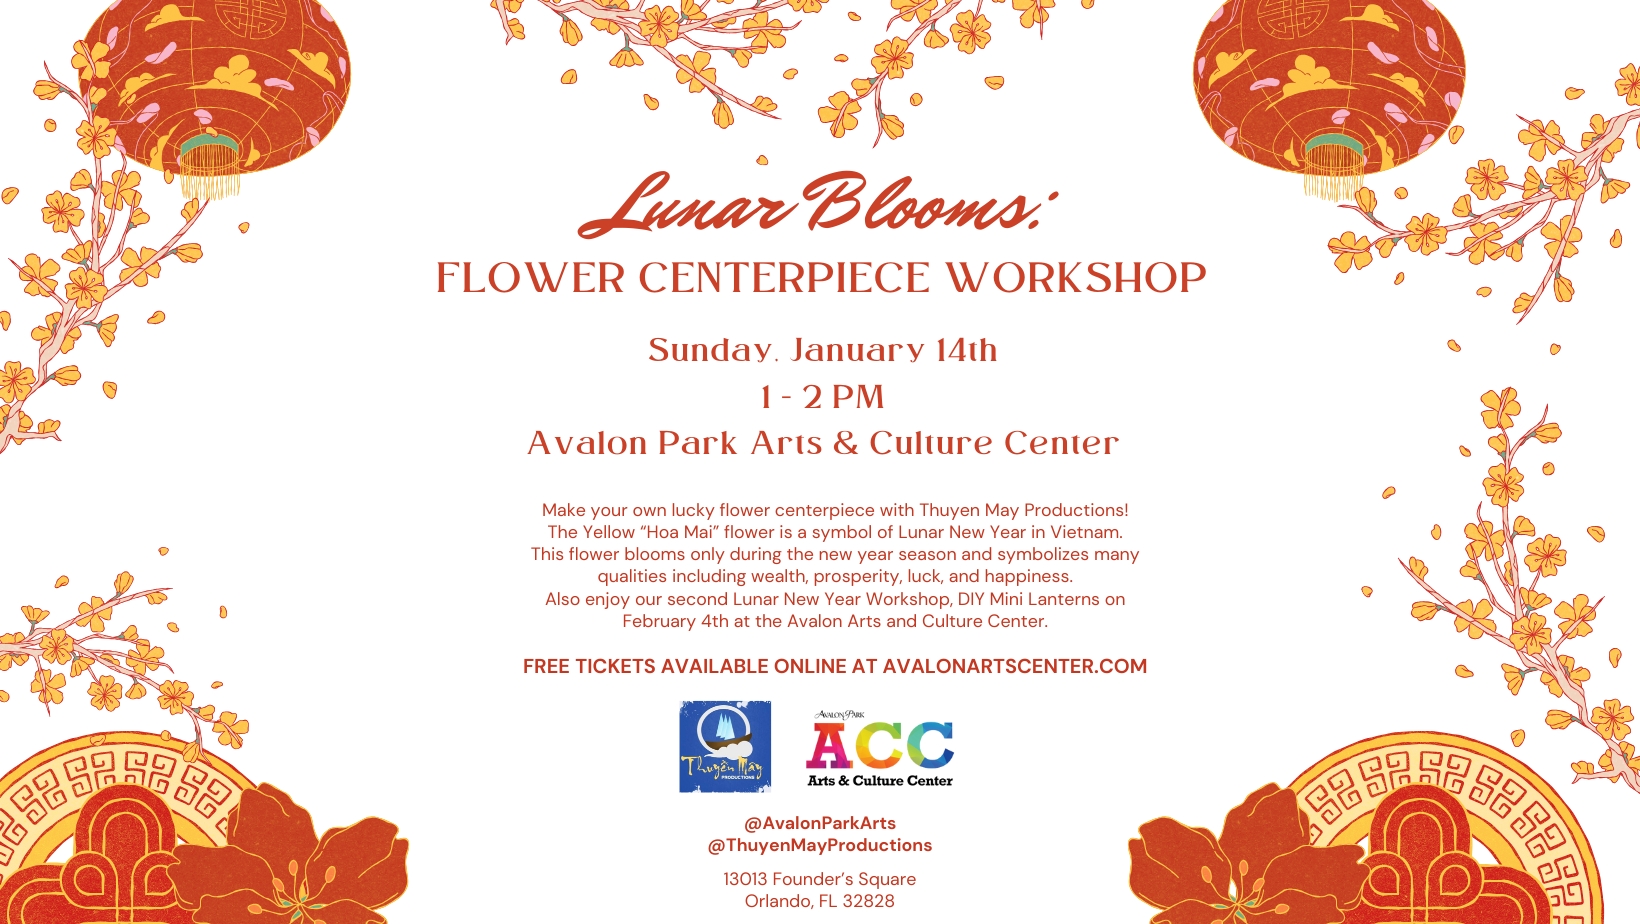 Lunar Blooms:  Flower Centerpiece Workshop cover image